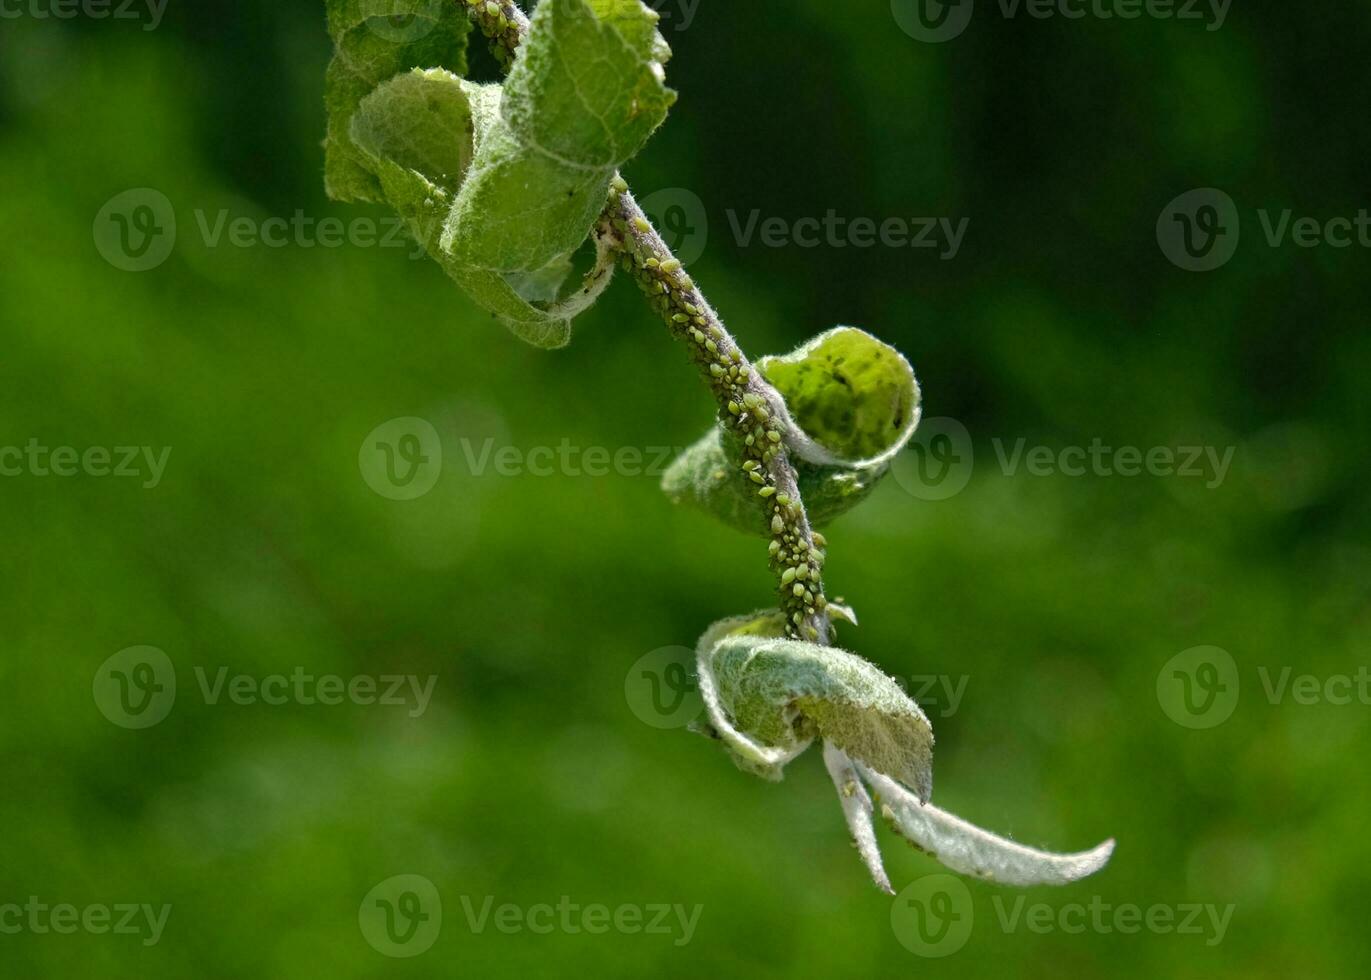 de cerca de áfido colonia - aphididae y hormigas - en aple árbol hoja. macro foto de insecto parásito - planta piojos, pulgón, mosca negra o mosca blanca - succión jugo desde planta.